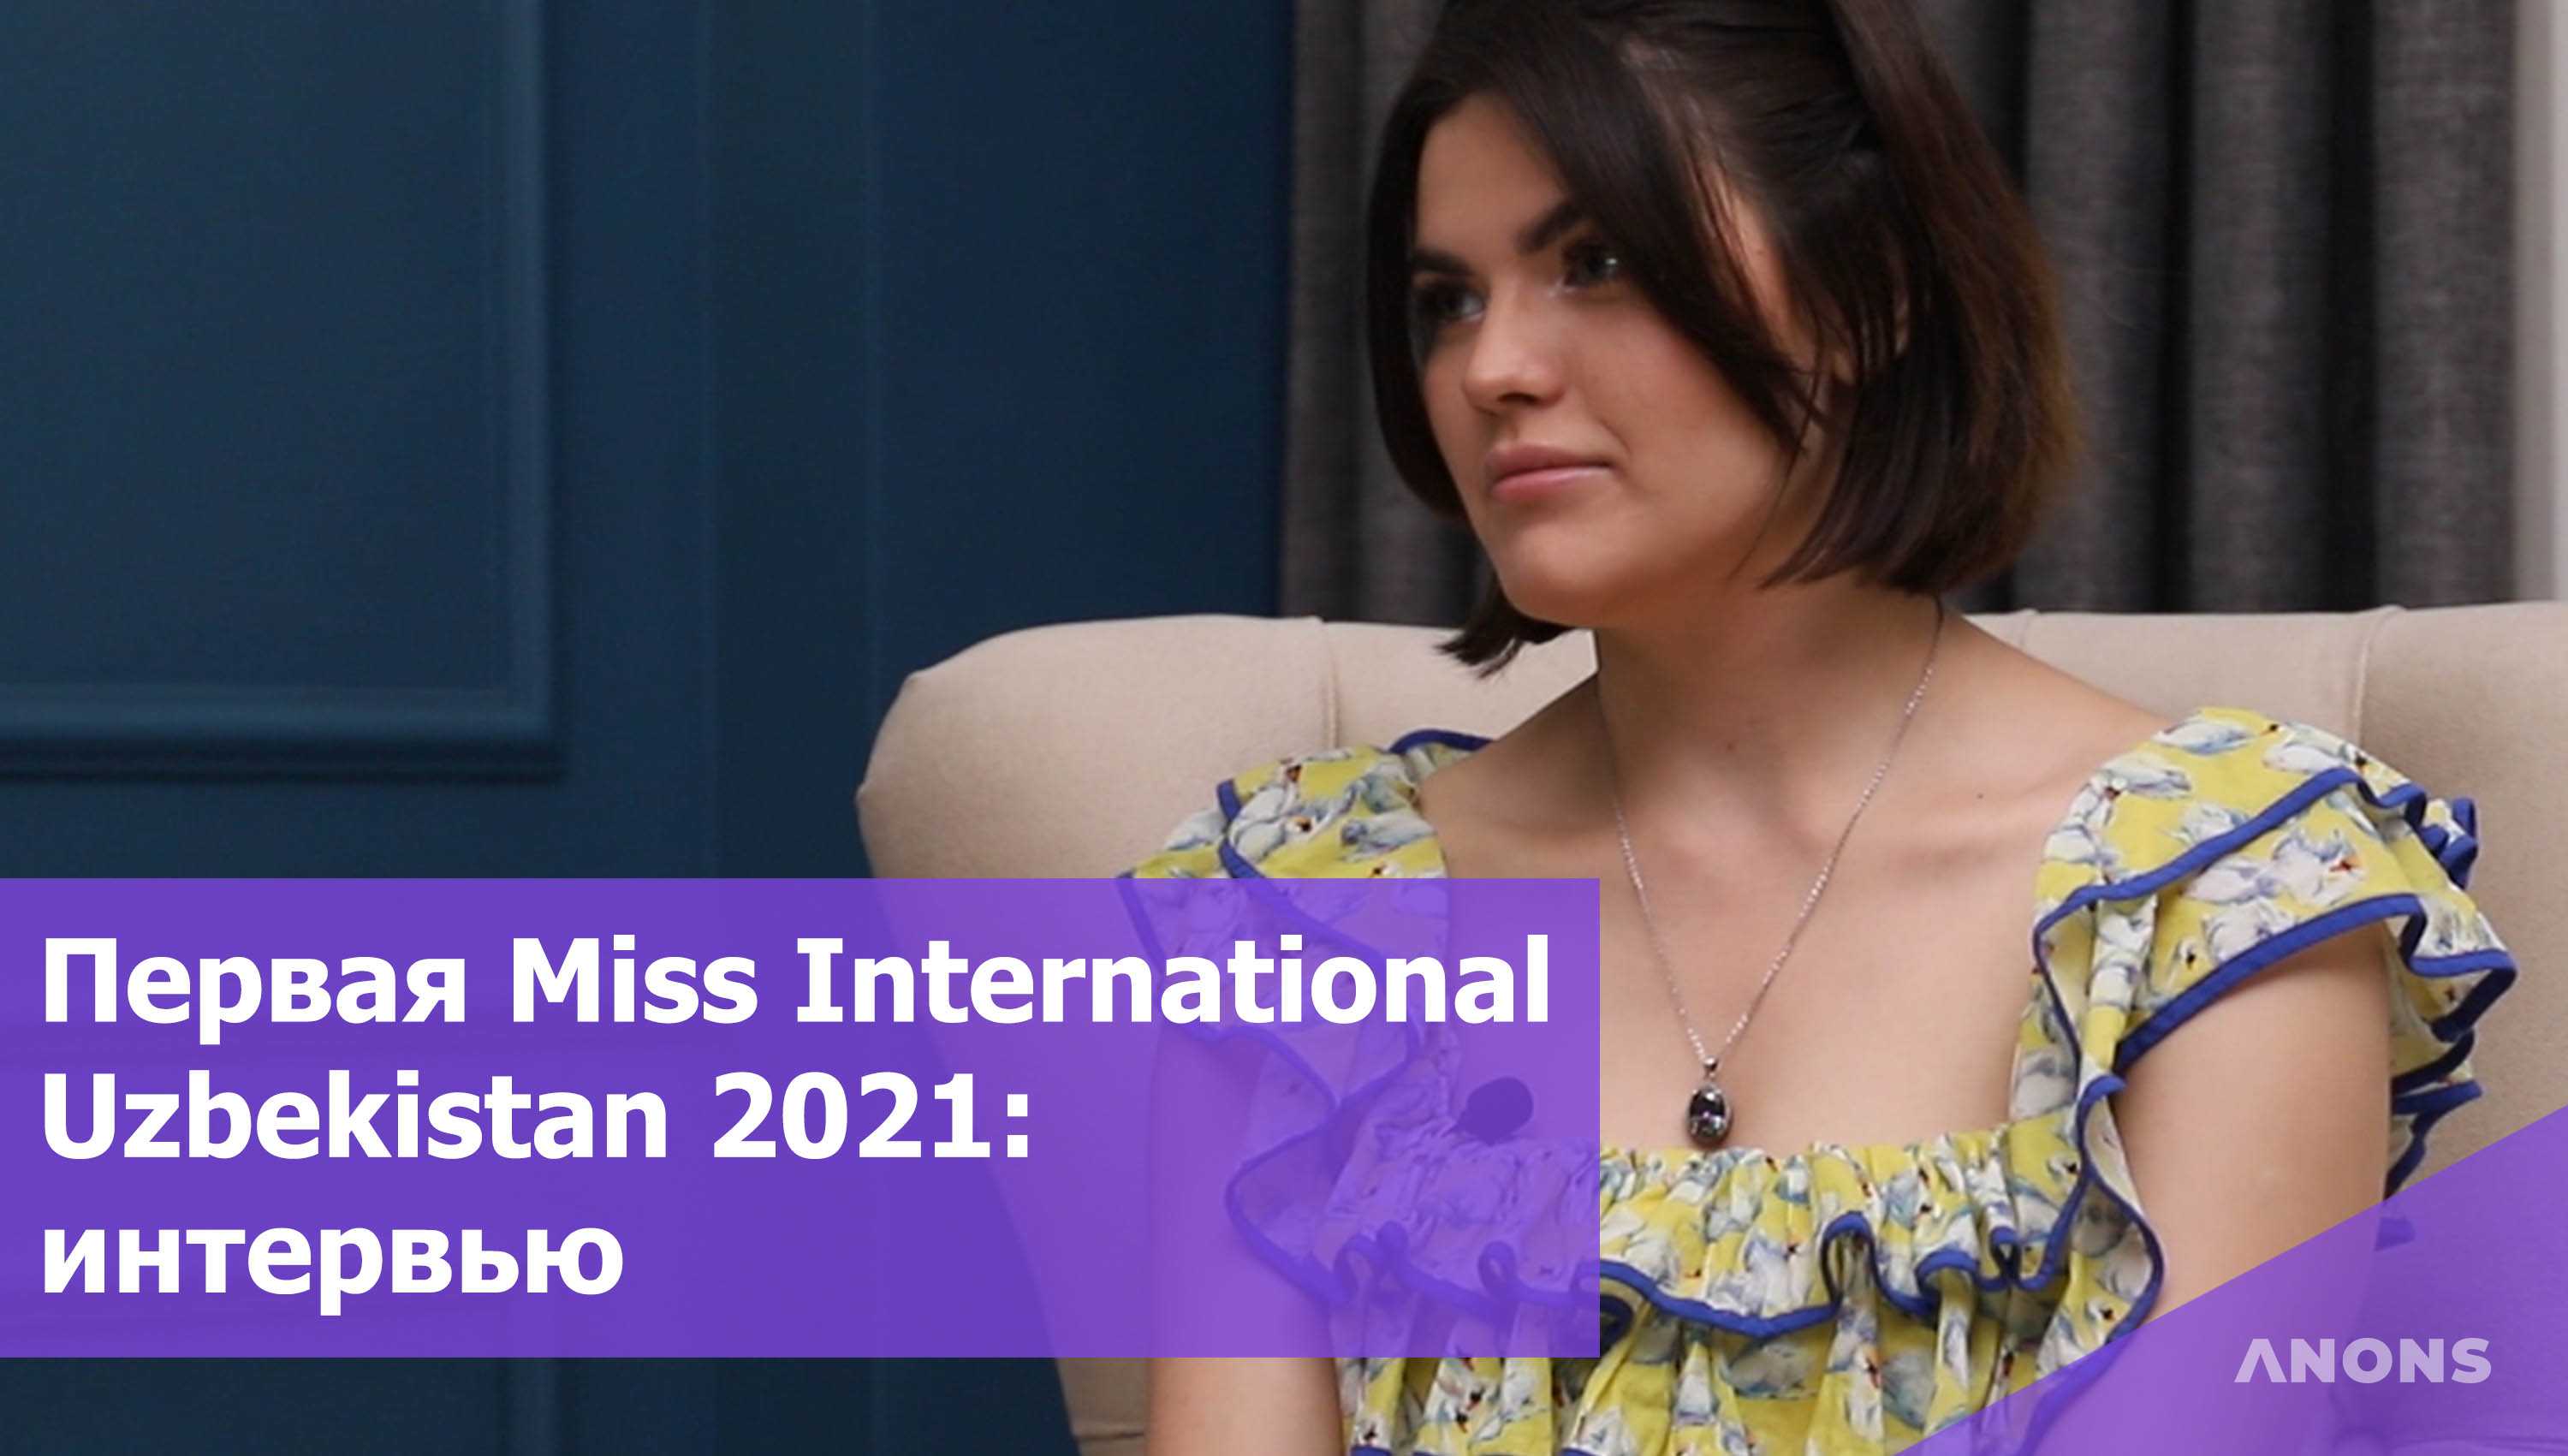 Интервью с Нигиной Фахриддиновой, которая будет впервые представлять Узбекистан на Miss International 2021 - видео